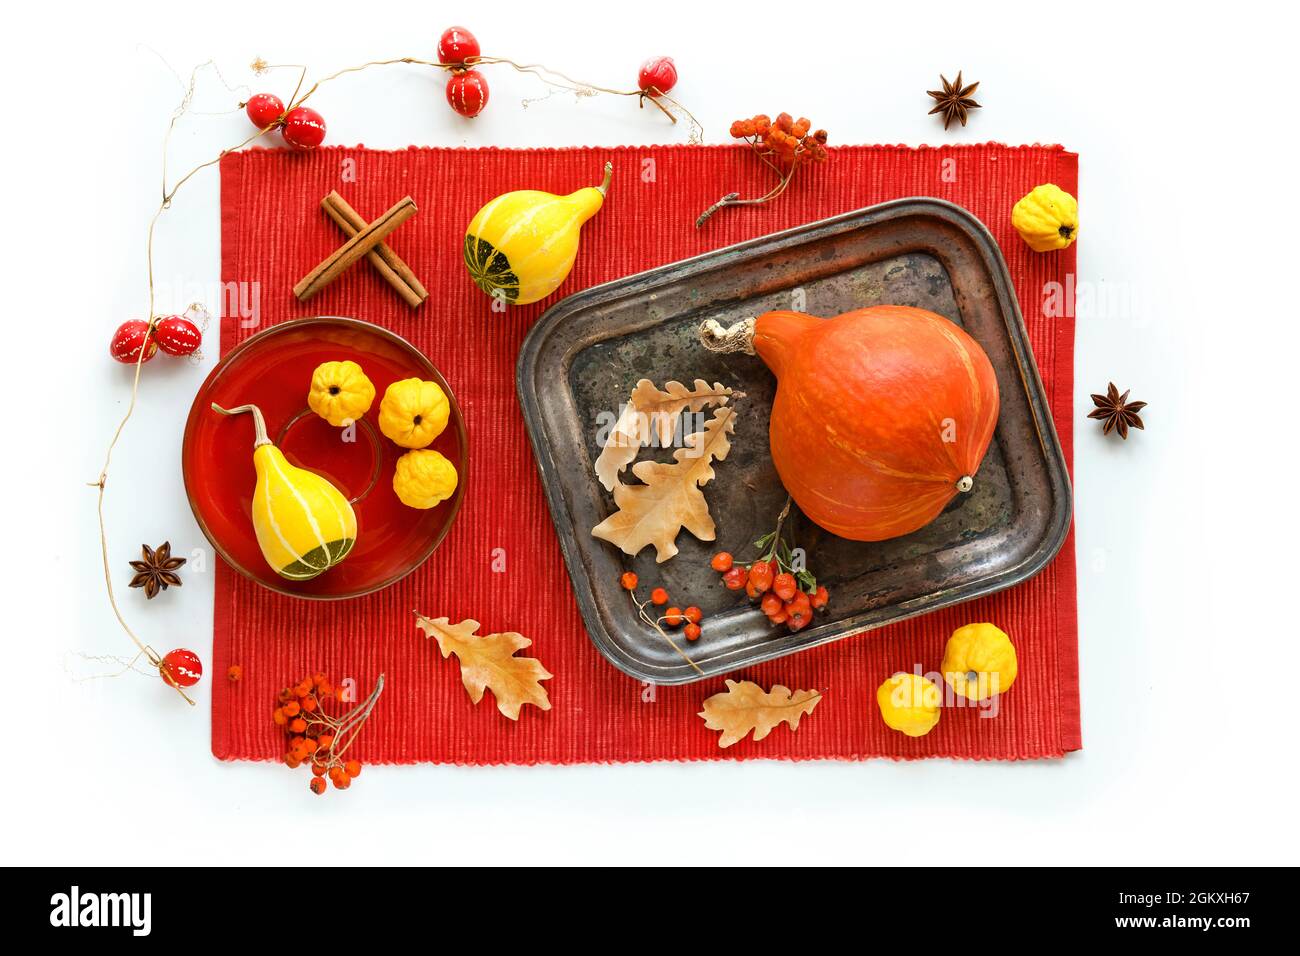 Couleurs d'automne. Citrouilles jaune et orange et fruits de coing sur plateau métallique serviette textile rouge vif sur fond blanc. Feuilles de chêne sèches, baie de rowan Banque D'Images